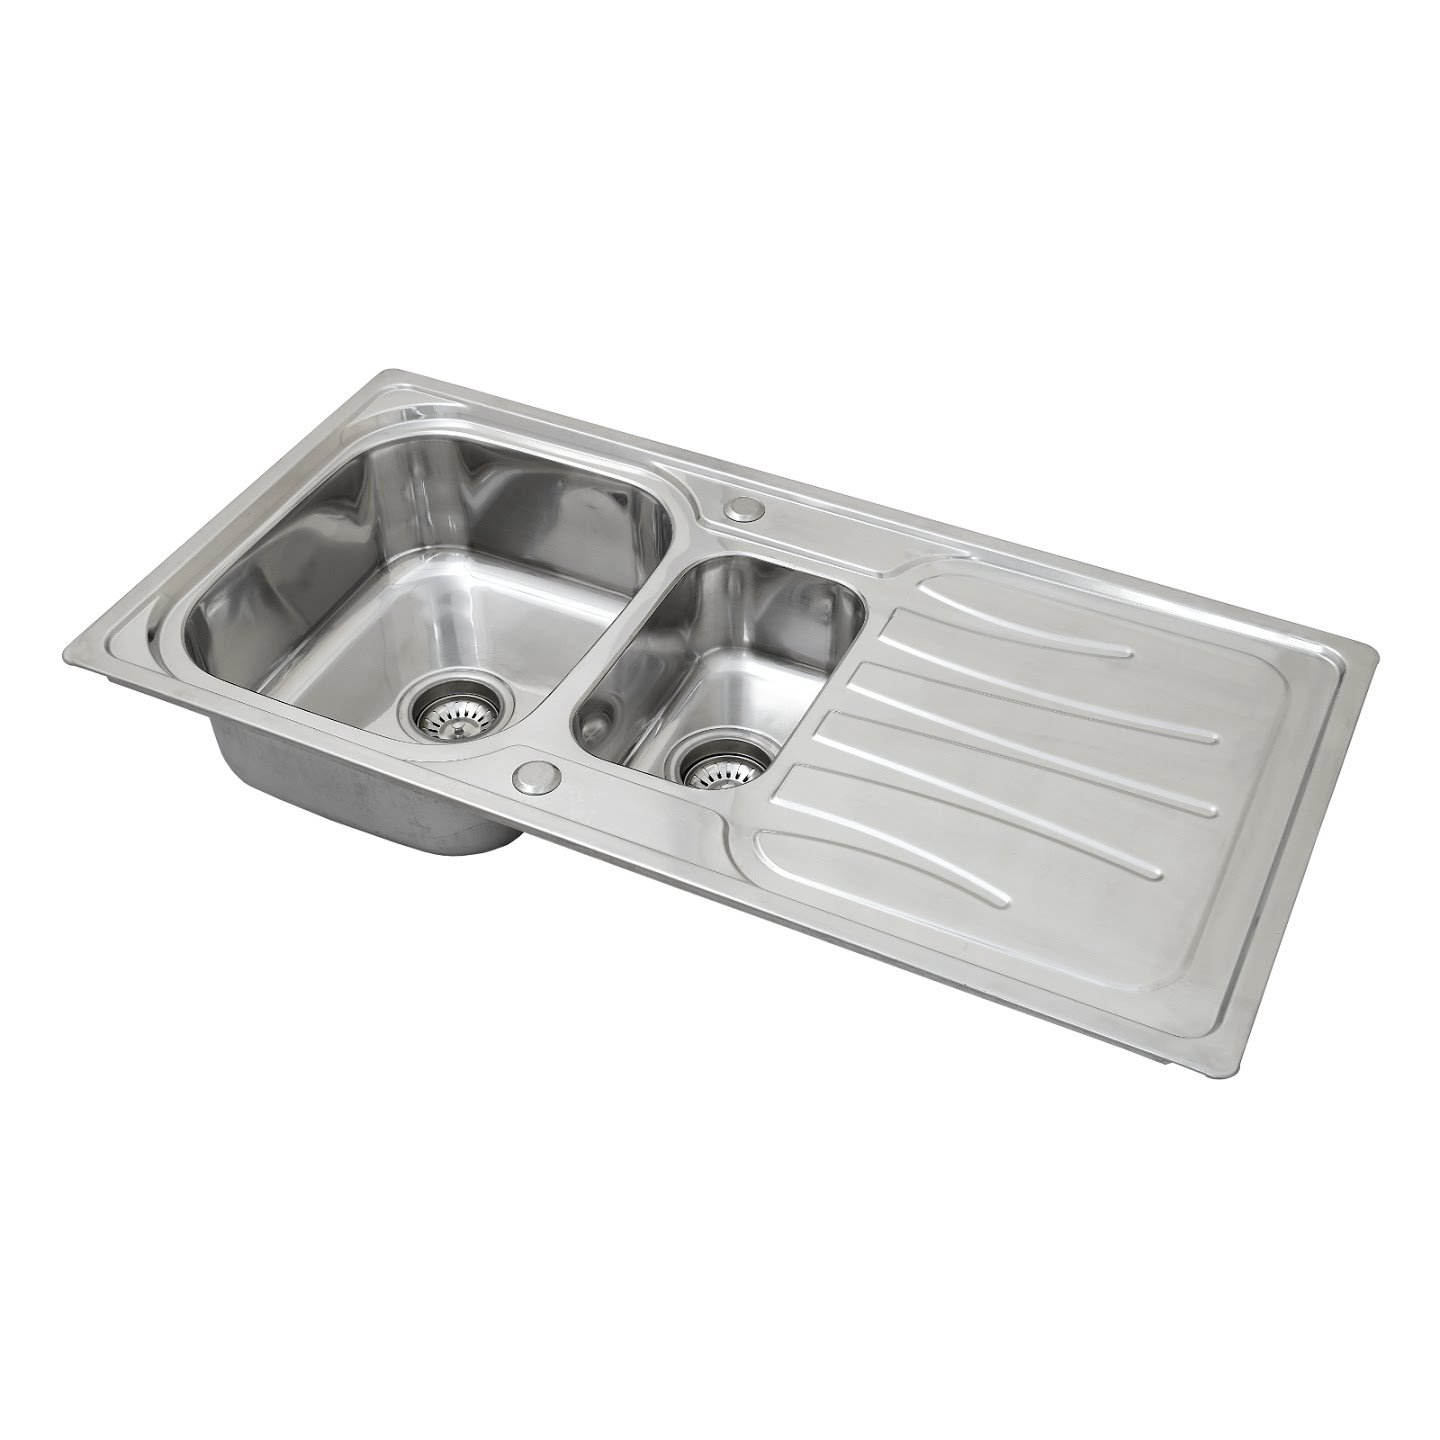 https://visualhunt.com/photos/11/enki-inset-stainless-steel-kitchen-sink-drainboard-1-5-one.jpg